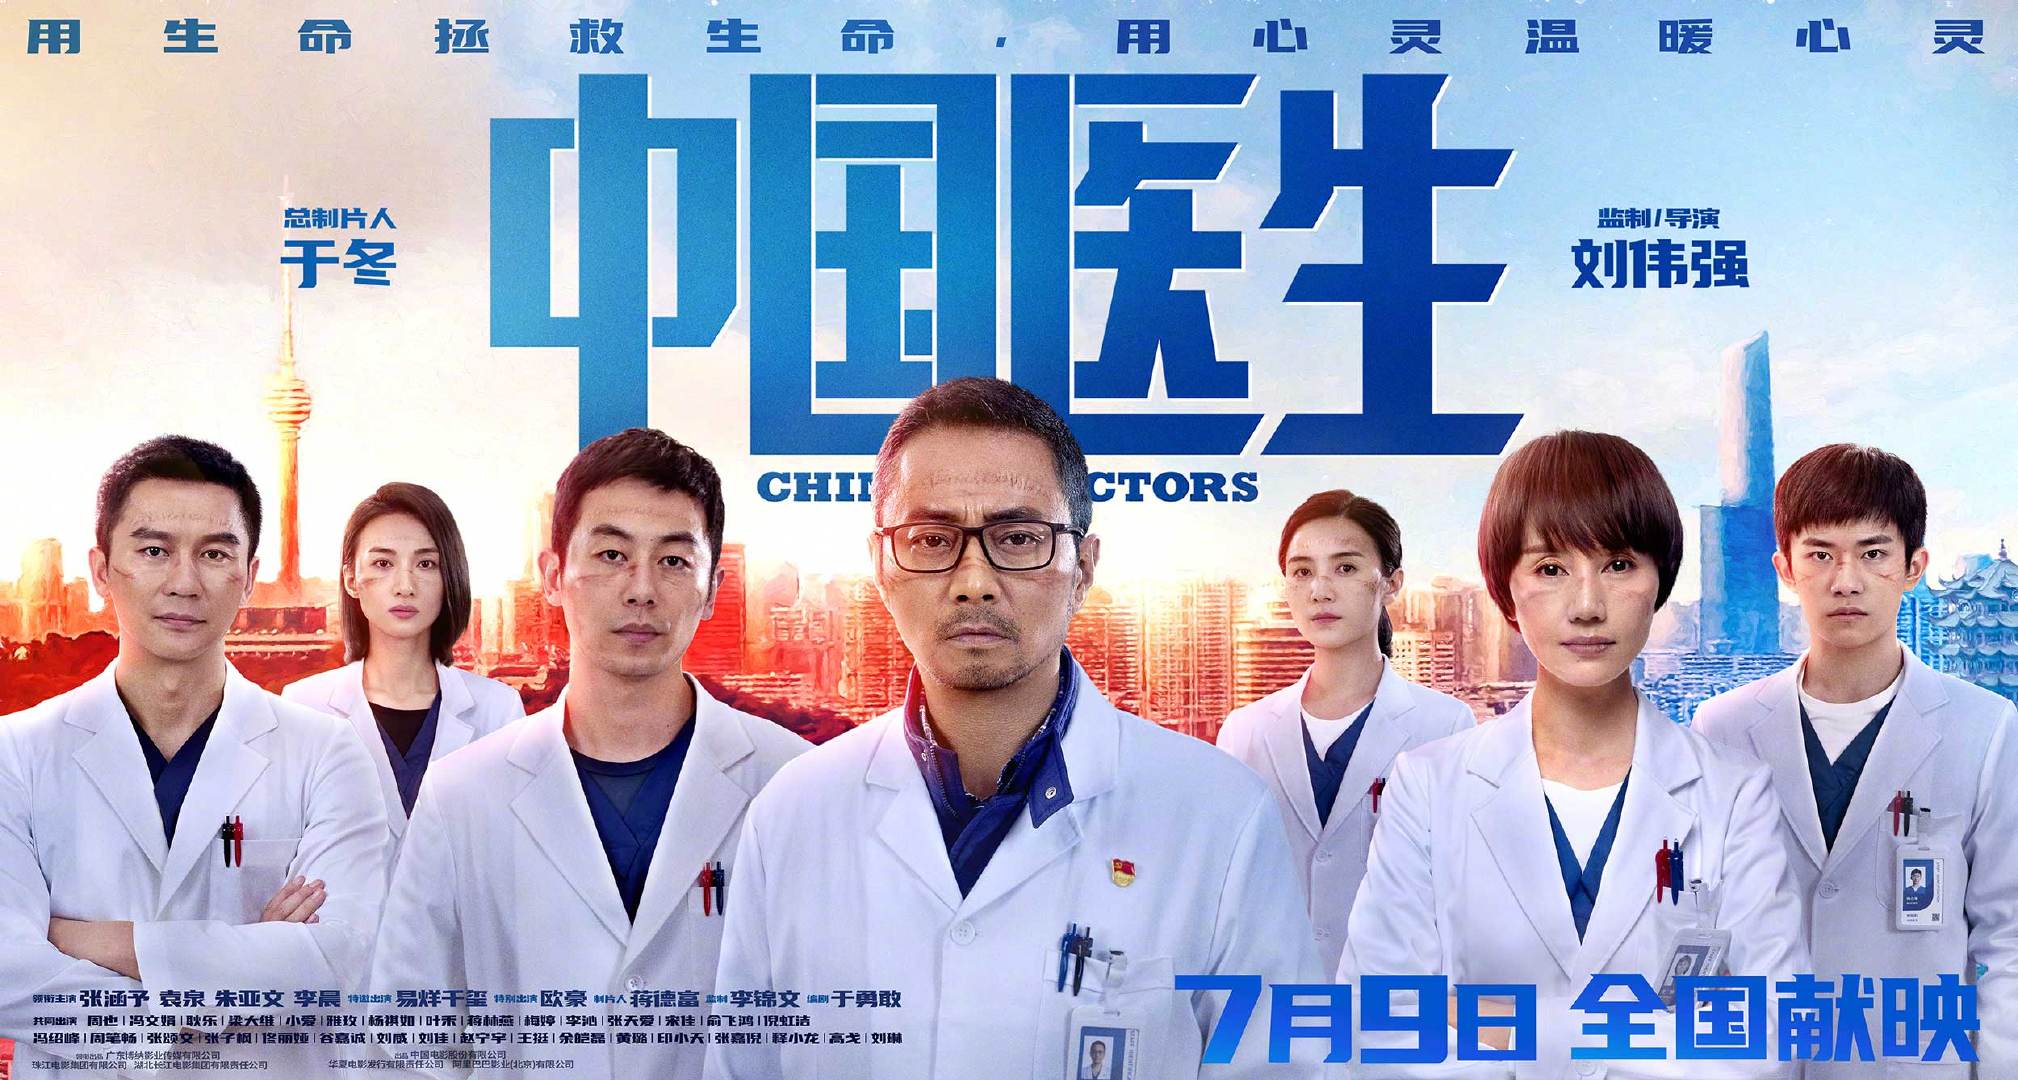 《中国医生》上映3天后 票房突破3亿元